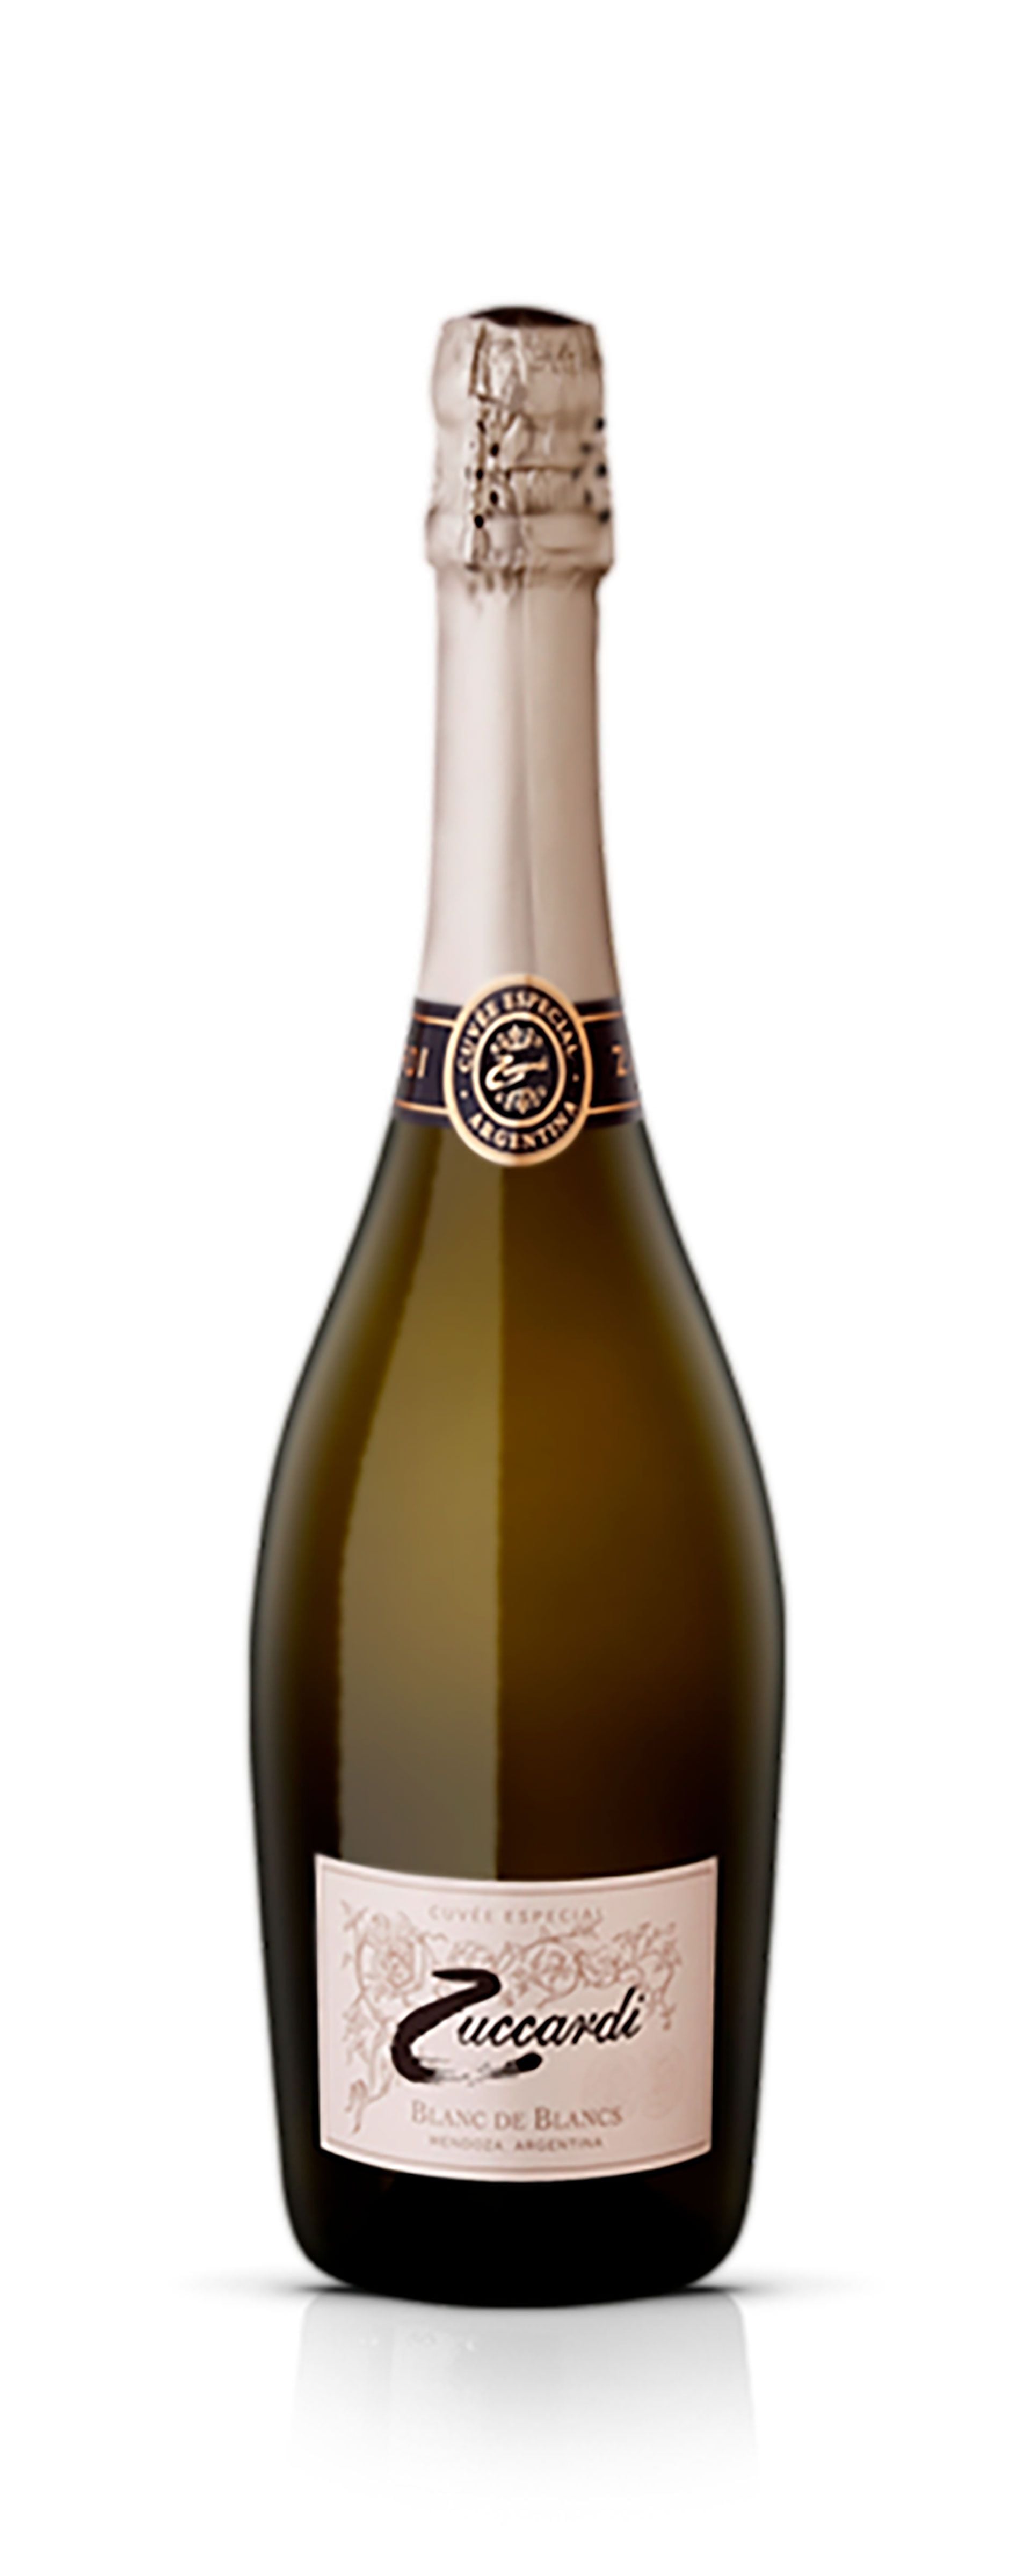 Zuccardi Blanc de Blancs Cuvée Especial: un Chardonnay de viñedos de altura, con más de tres años sobre borras, reflejando la precisión y frescura de los vinos de Sebastián Zuccardi